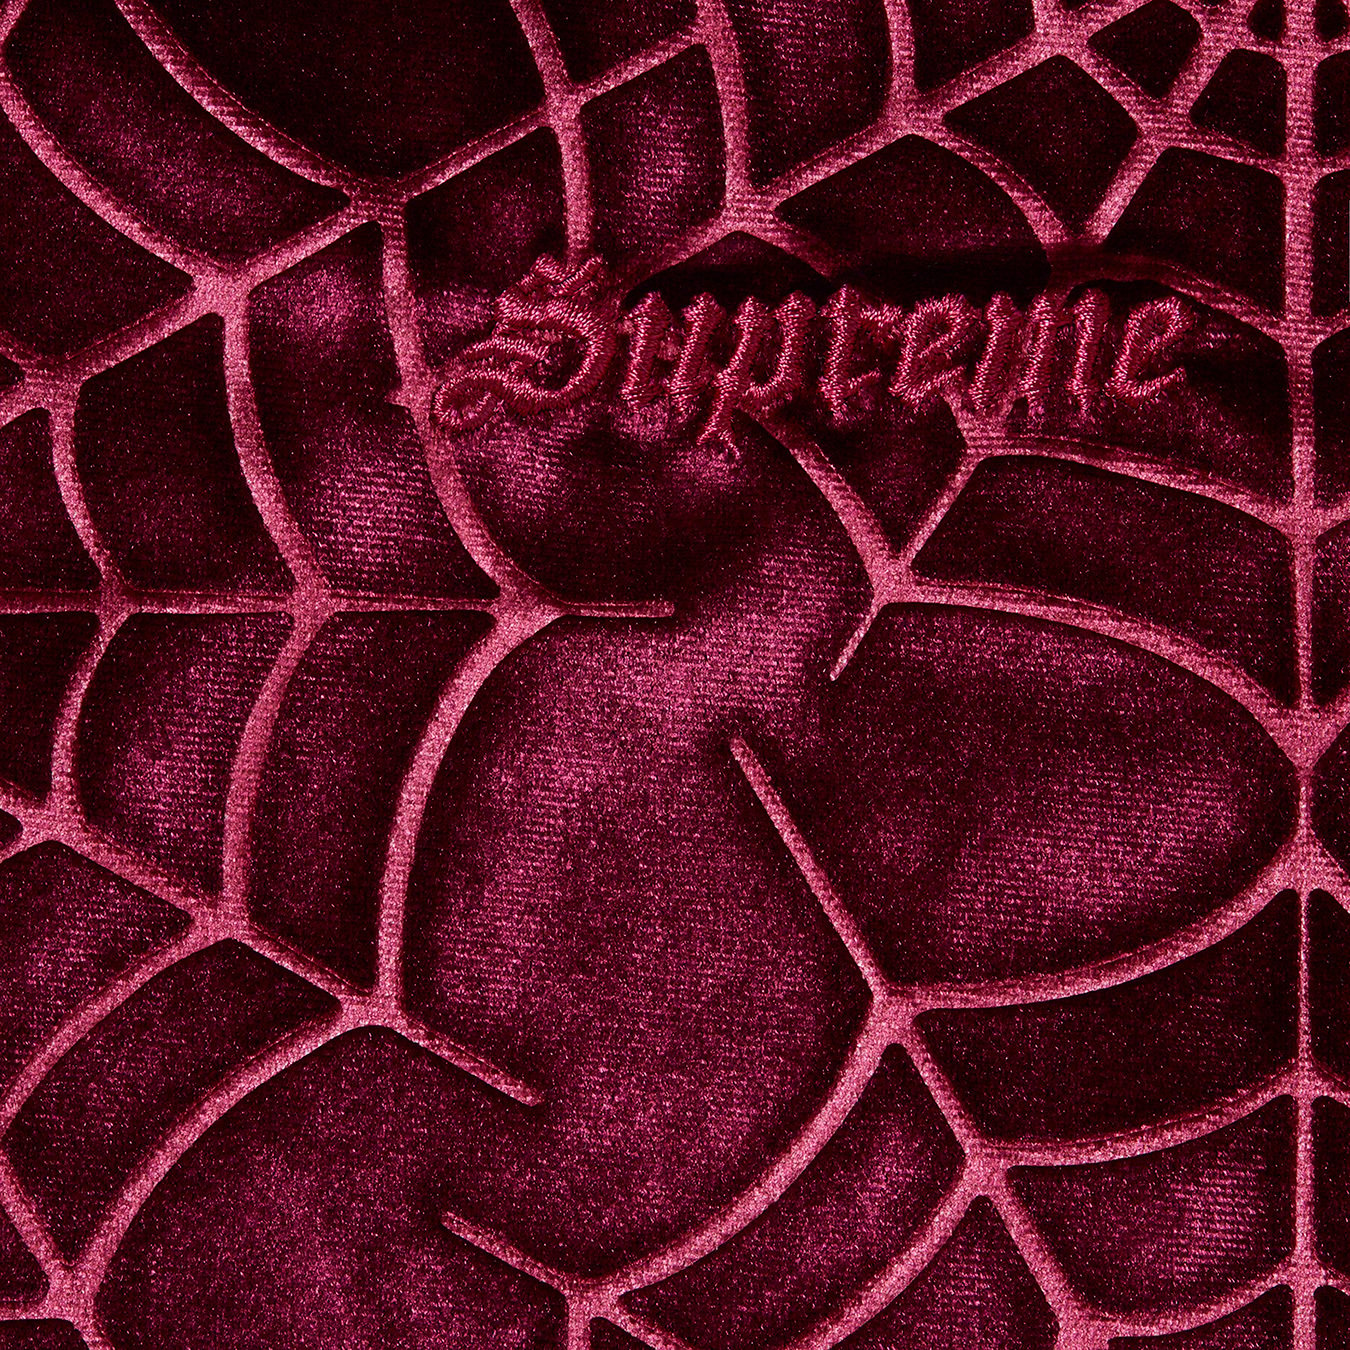 Spider Web Velvet S S Shirt - fall winter 2021 - Supreme